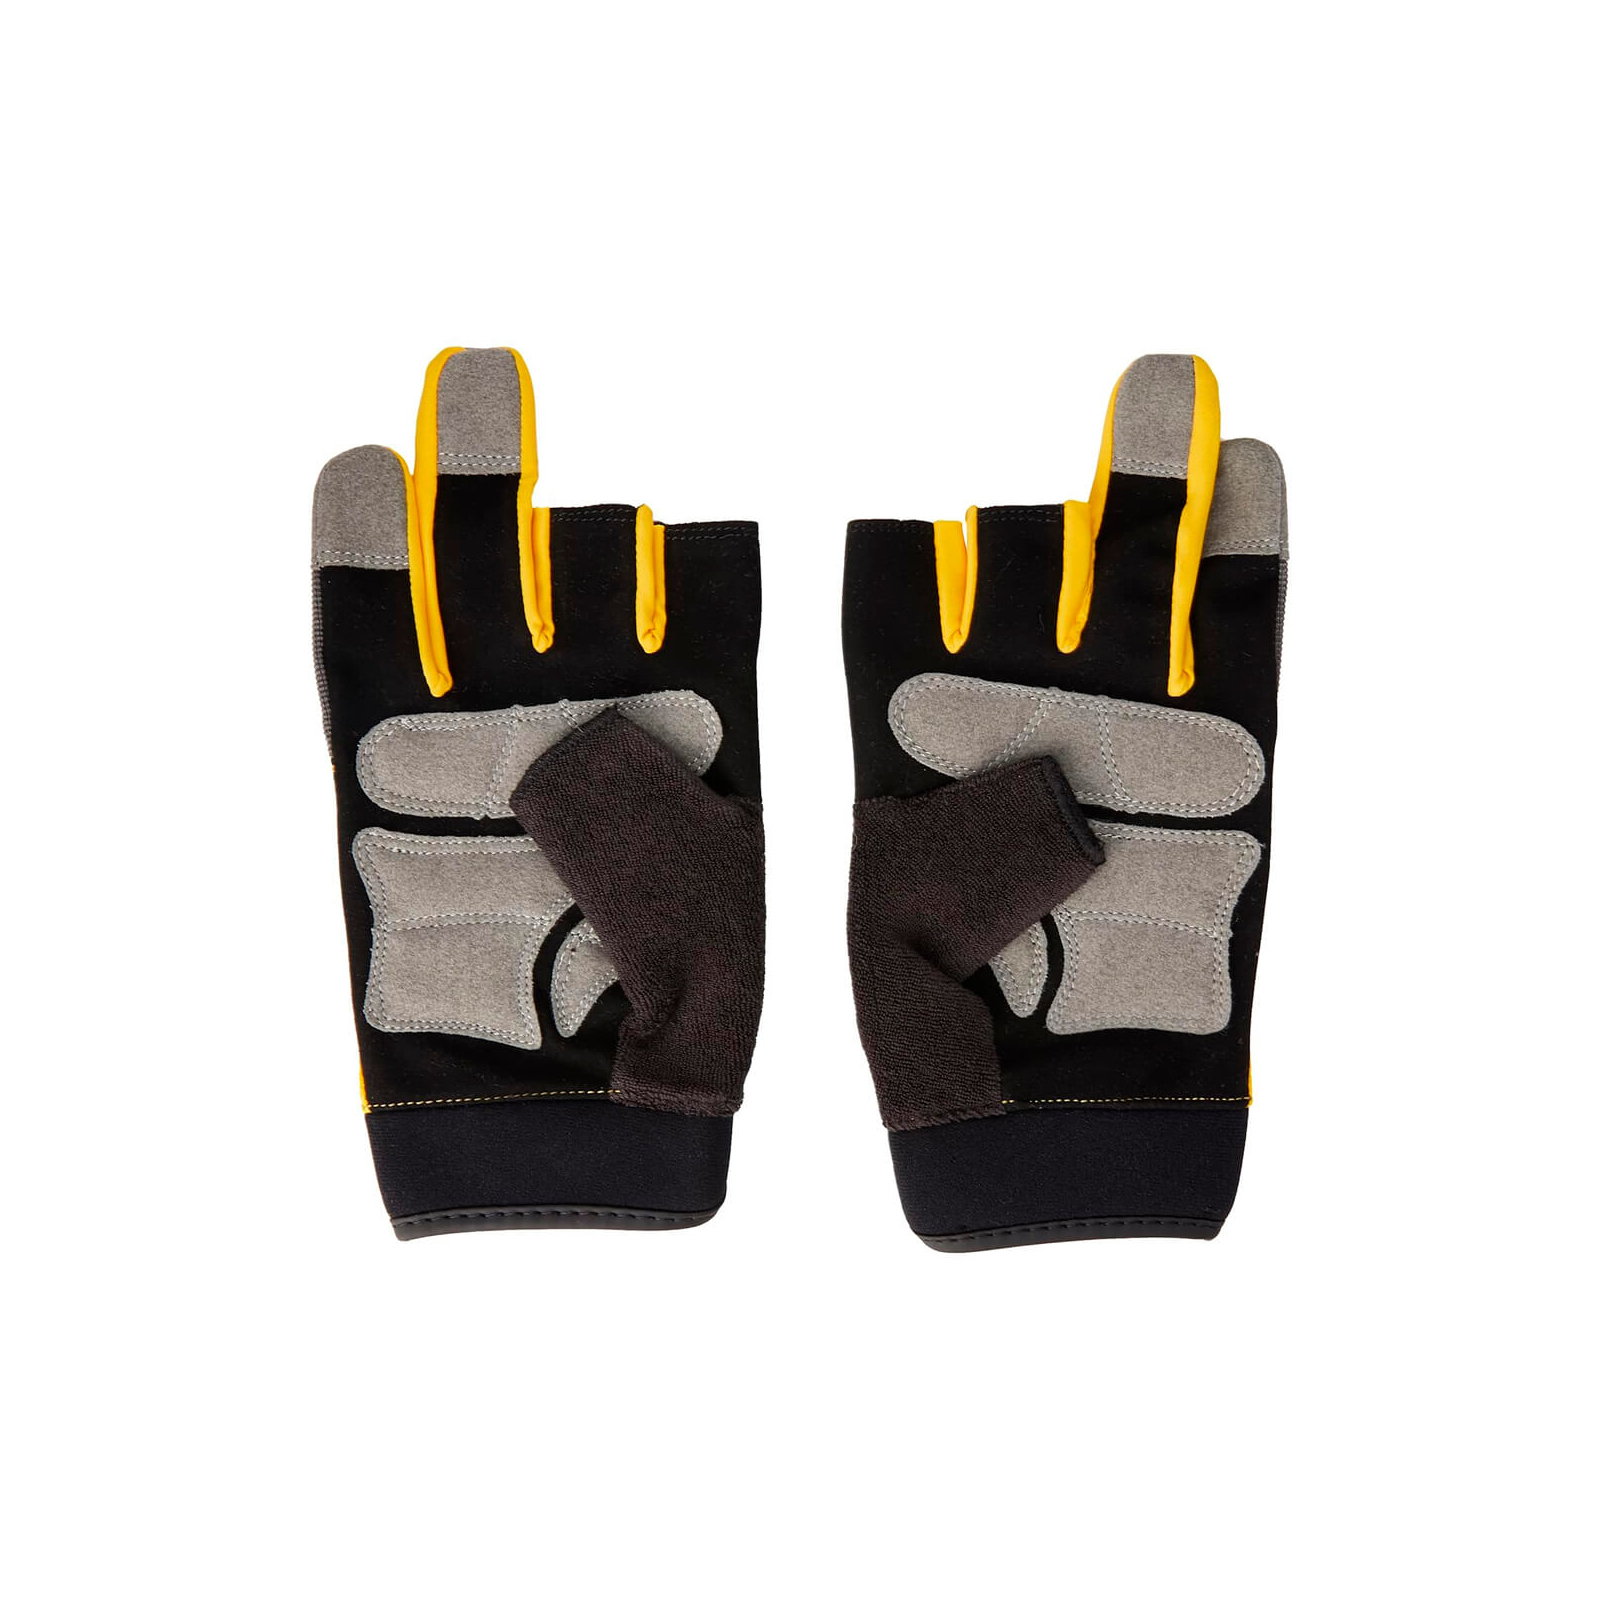 Захисні рукавиці DeWALT частково відкриті, розм. L/9, з накладками на долоні (DPG214L) зображення 3